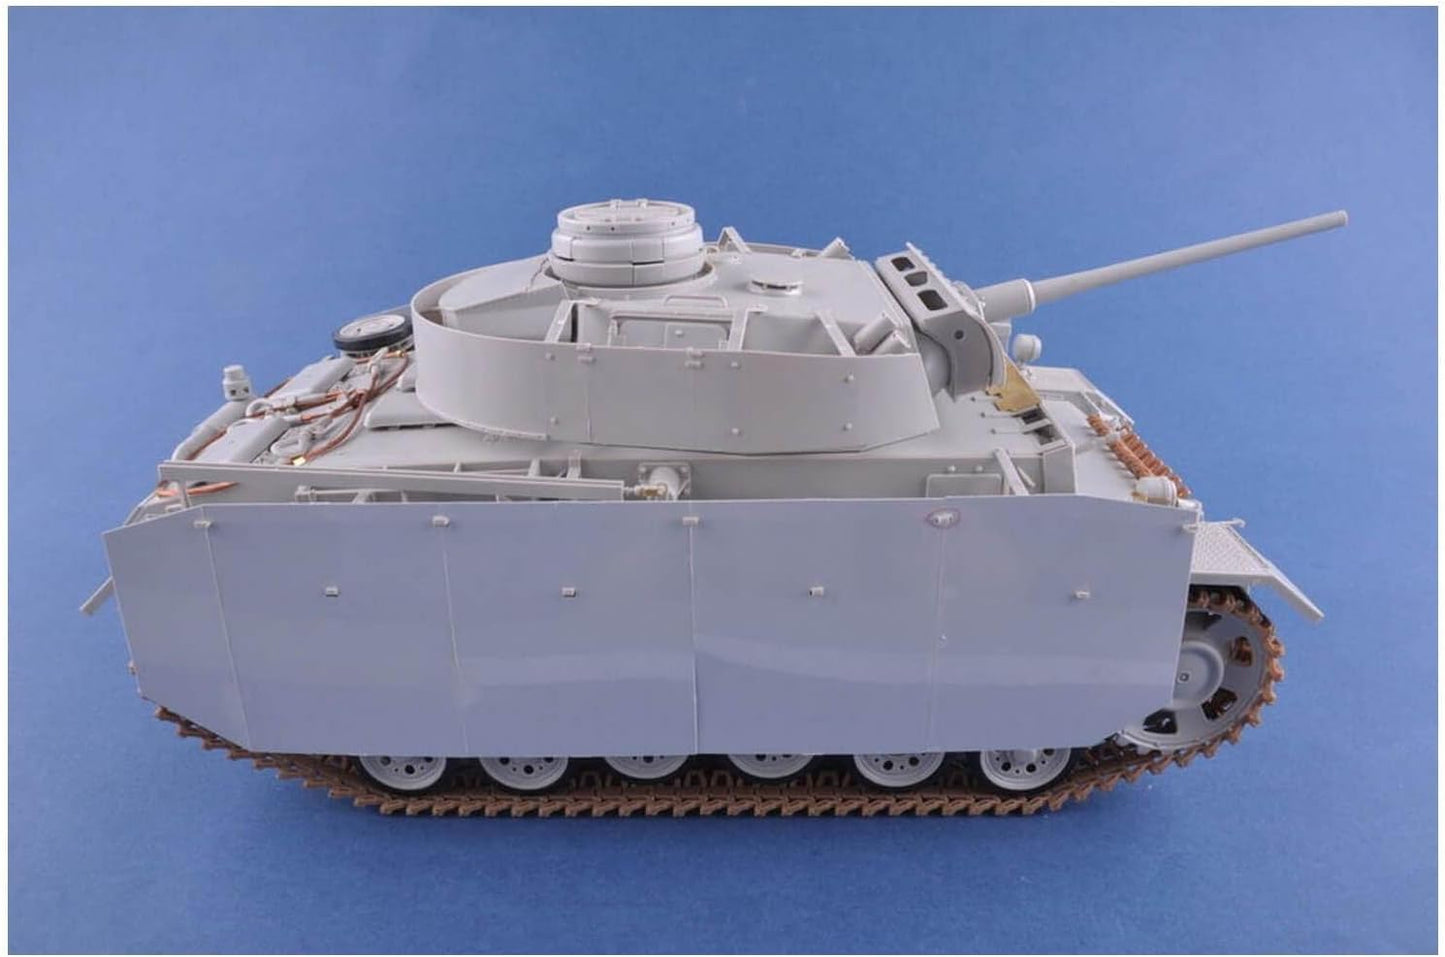 Heller 1/16th scale Pz.Kpfw.III Ausf. J,L,M (4 in 1)